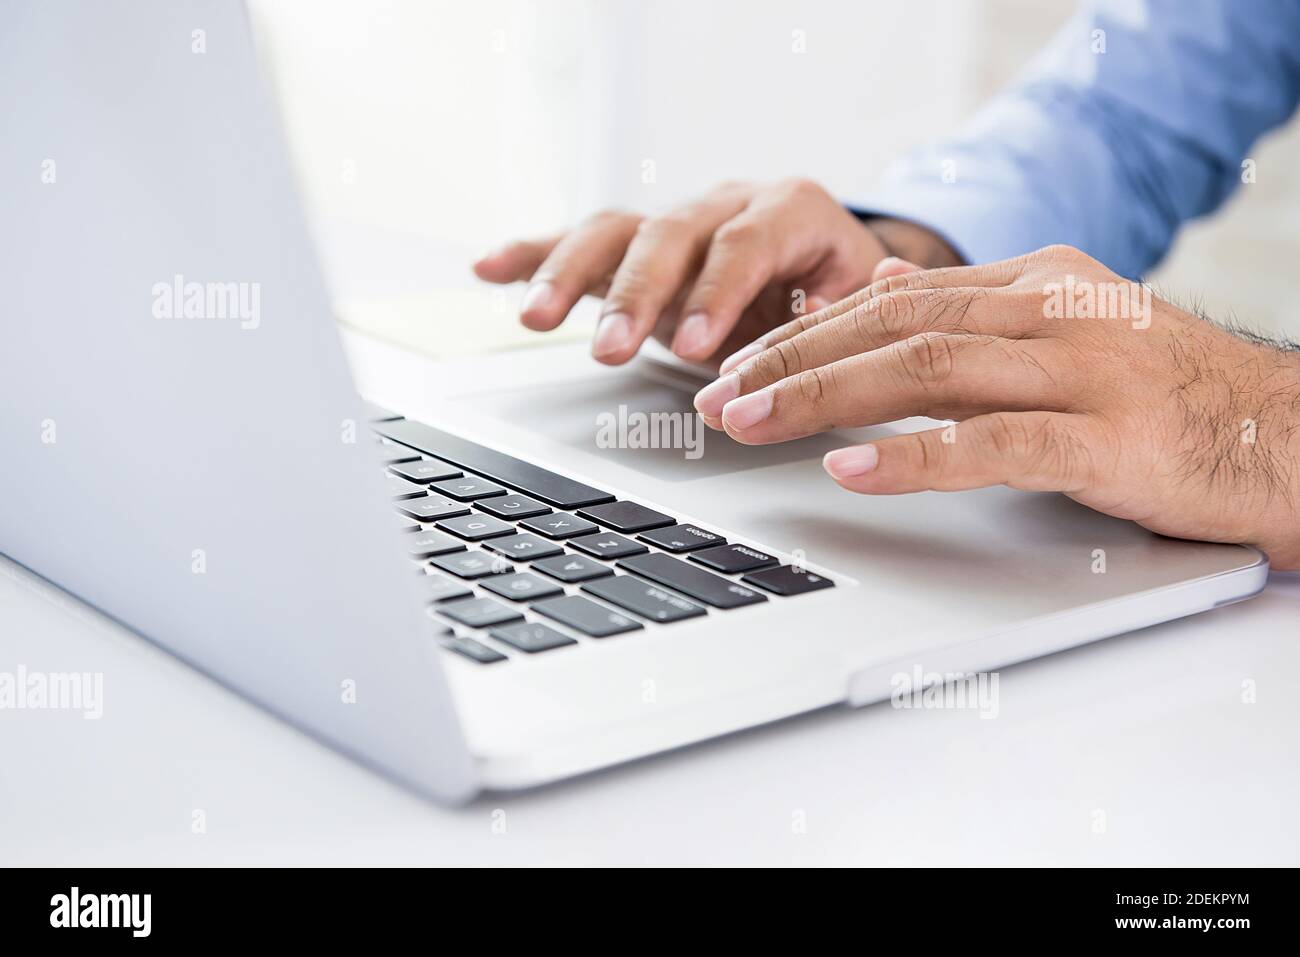 Homme d'affaires utilisant un ordinateur portable travaillant et recherchant des informations sur mise en place d'affaires en ligne sur internet au bureau Banque D'Images